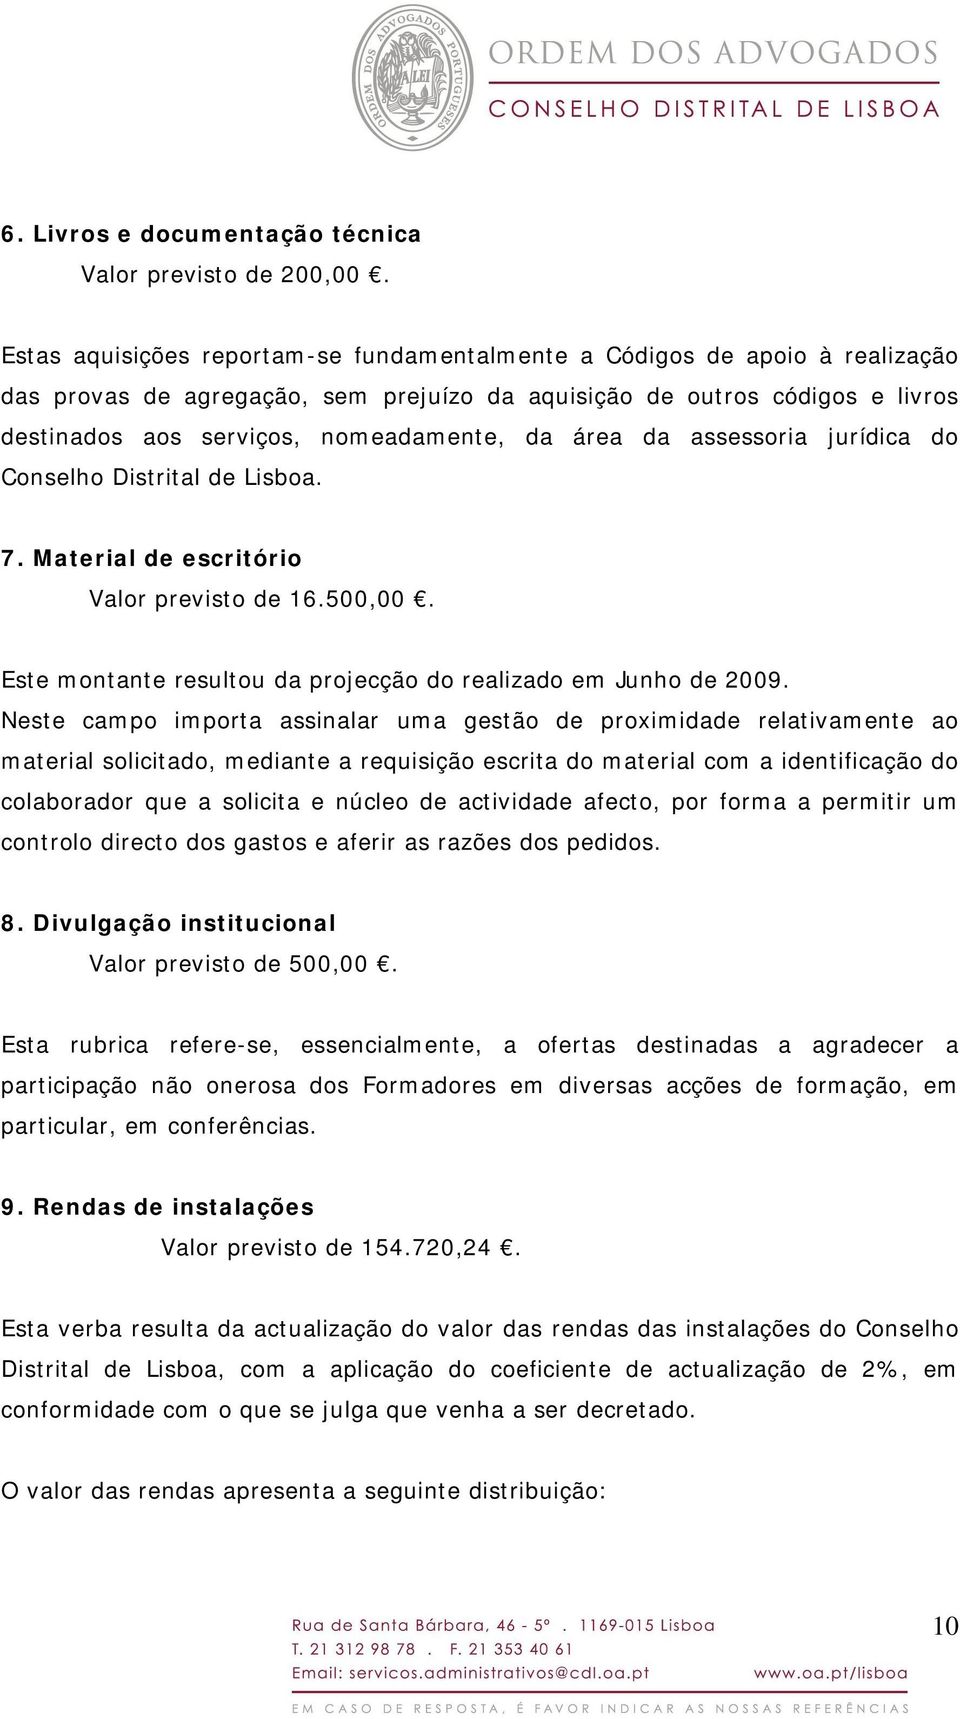 área da assessoria jurídica do Conselho Distrital de Lisboa. 7. Material de escritório Valor previsto de 16.500,00. Este montante resultou da projecção do realizado em Junho de 2009.